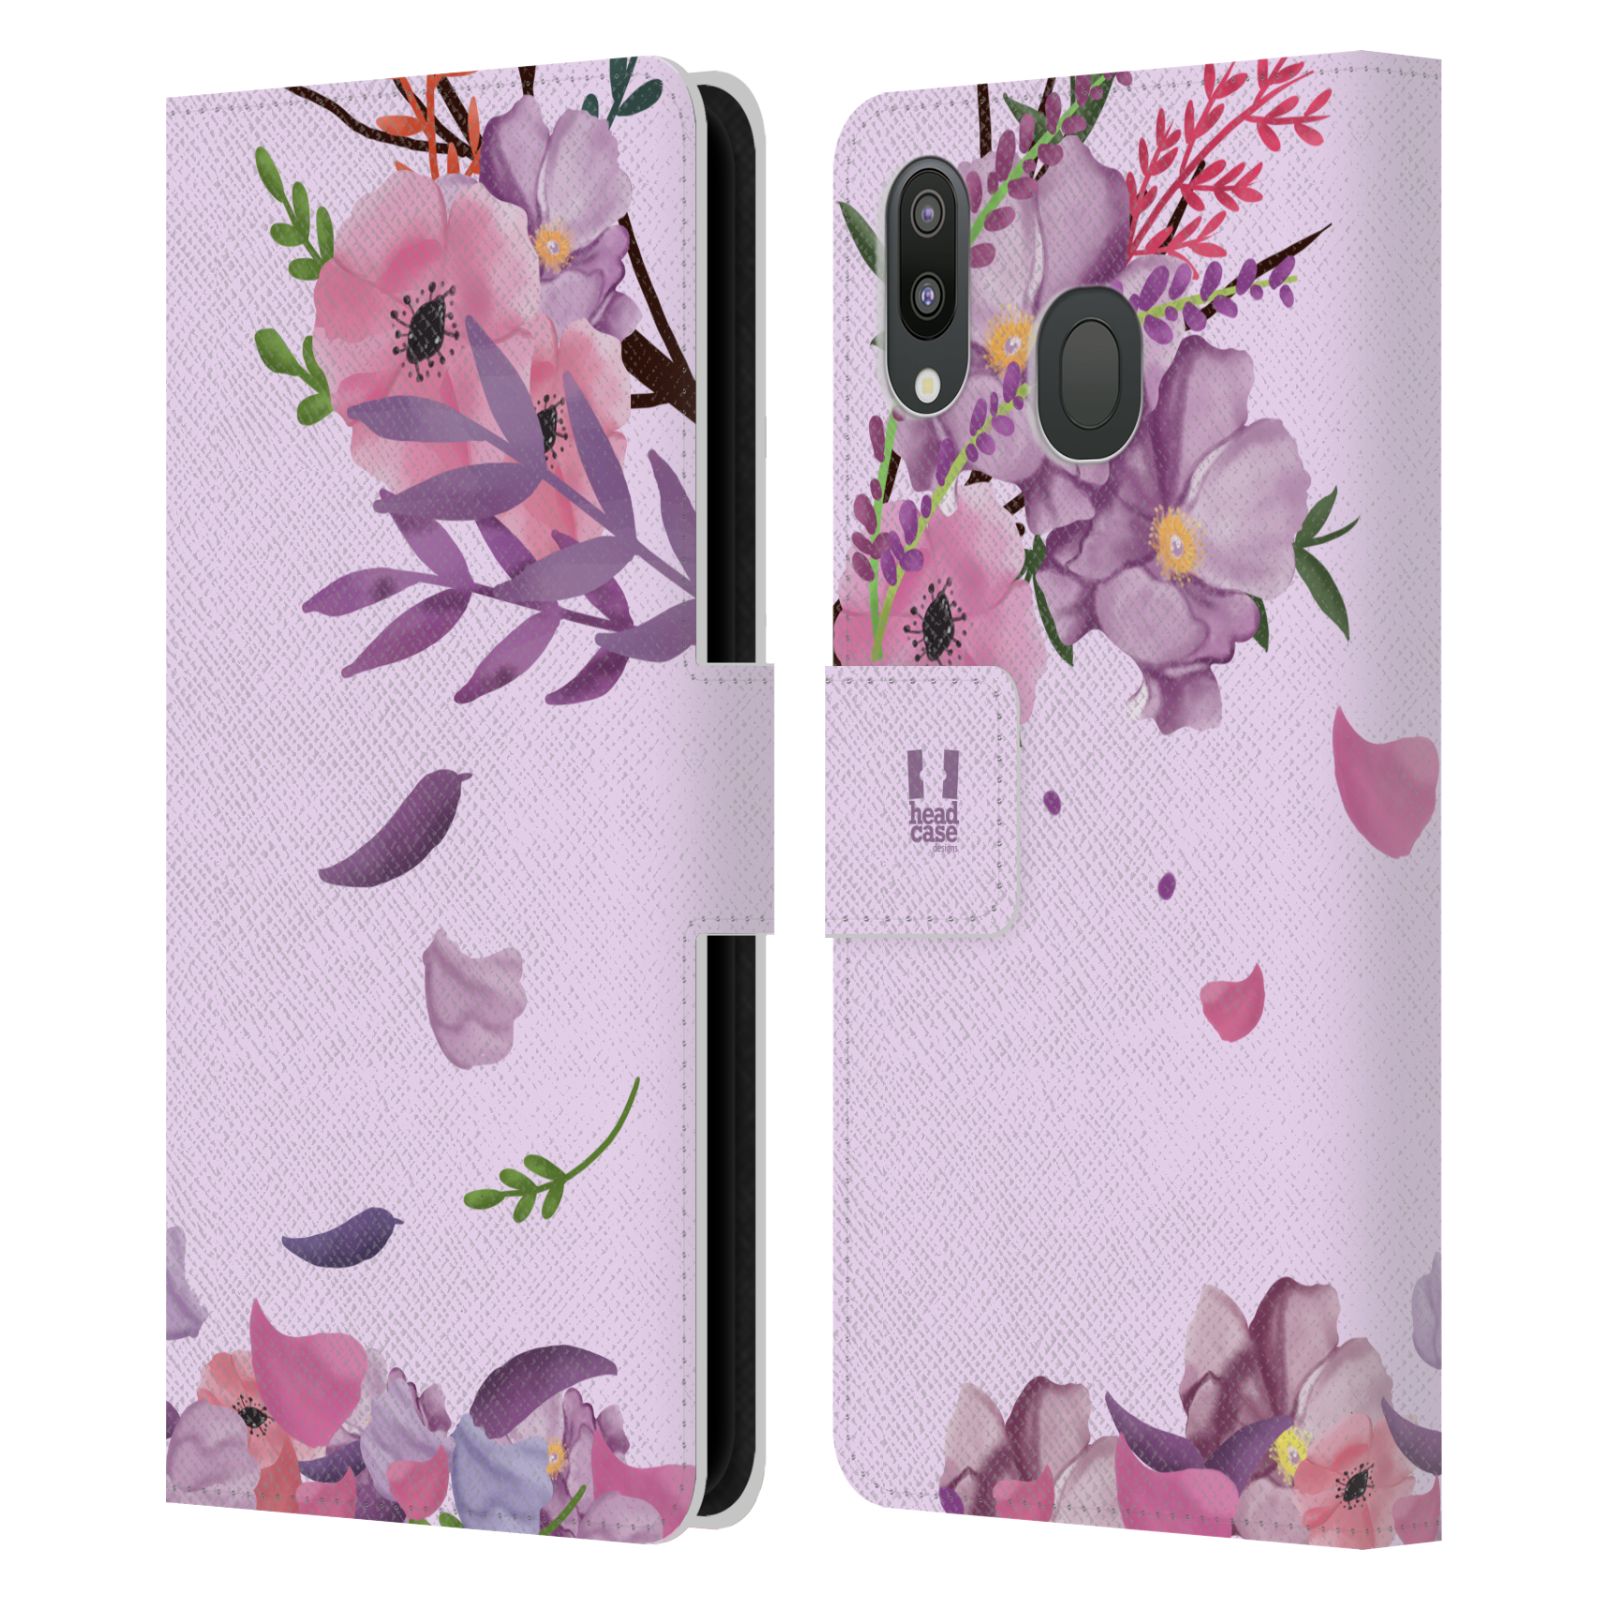 Pouzdro na mobil Samsung Galaxy M20 - HEAD CASE - Rozkvetlé růže a listy růžová